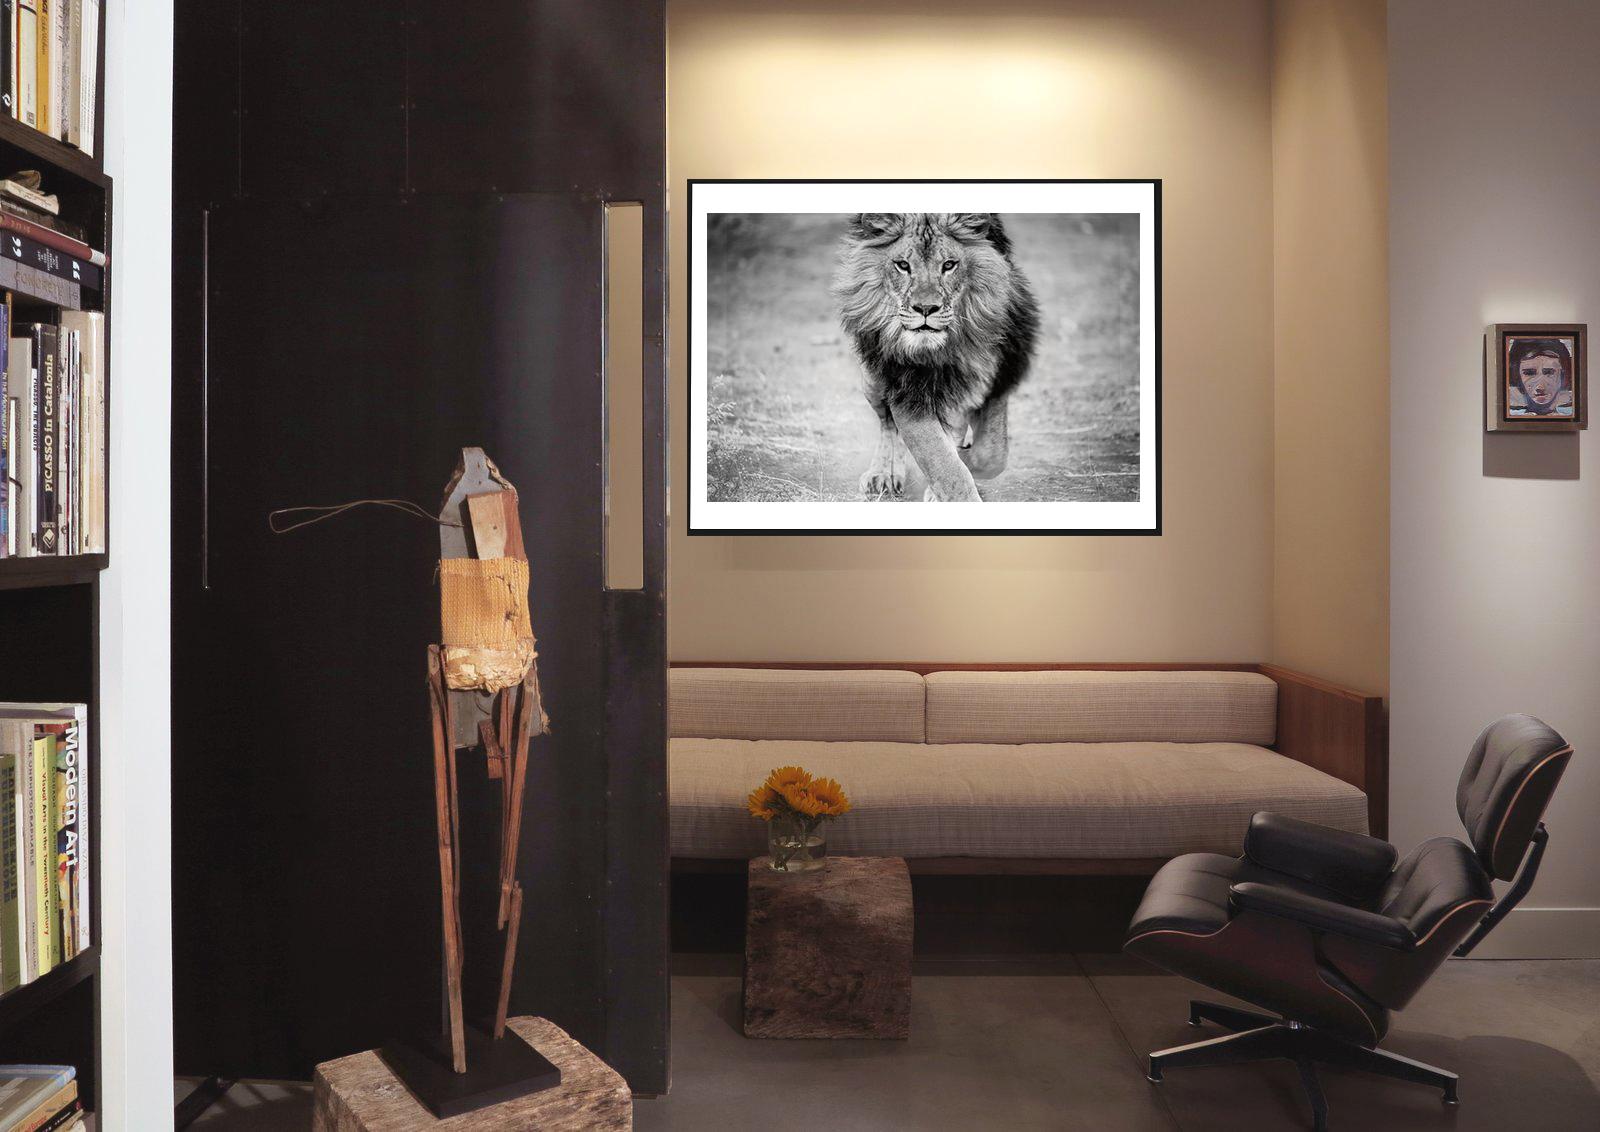 Dies ist eine zeitgenössische Fotografie eines afrikanischen Löwen. 
Gedruckt auf Archivpapier mit Archivtinten.
40x60 Unsignierter Druck
Gedruckt auf Archivpapier und mit Archivtinten 
Einrahmung verfügbar. Erkundigen Sie sich nach den Preisen.  

